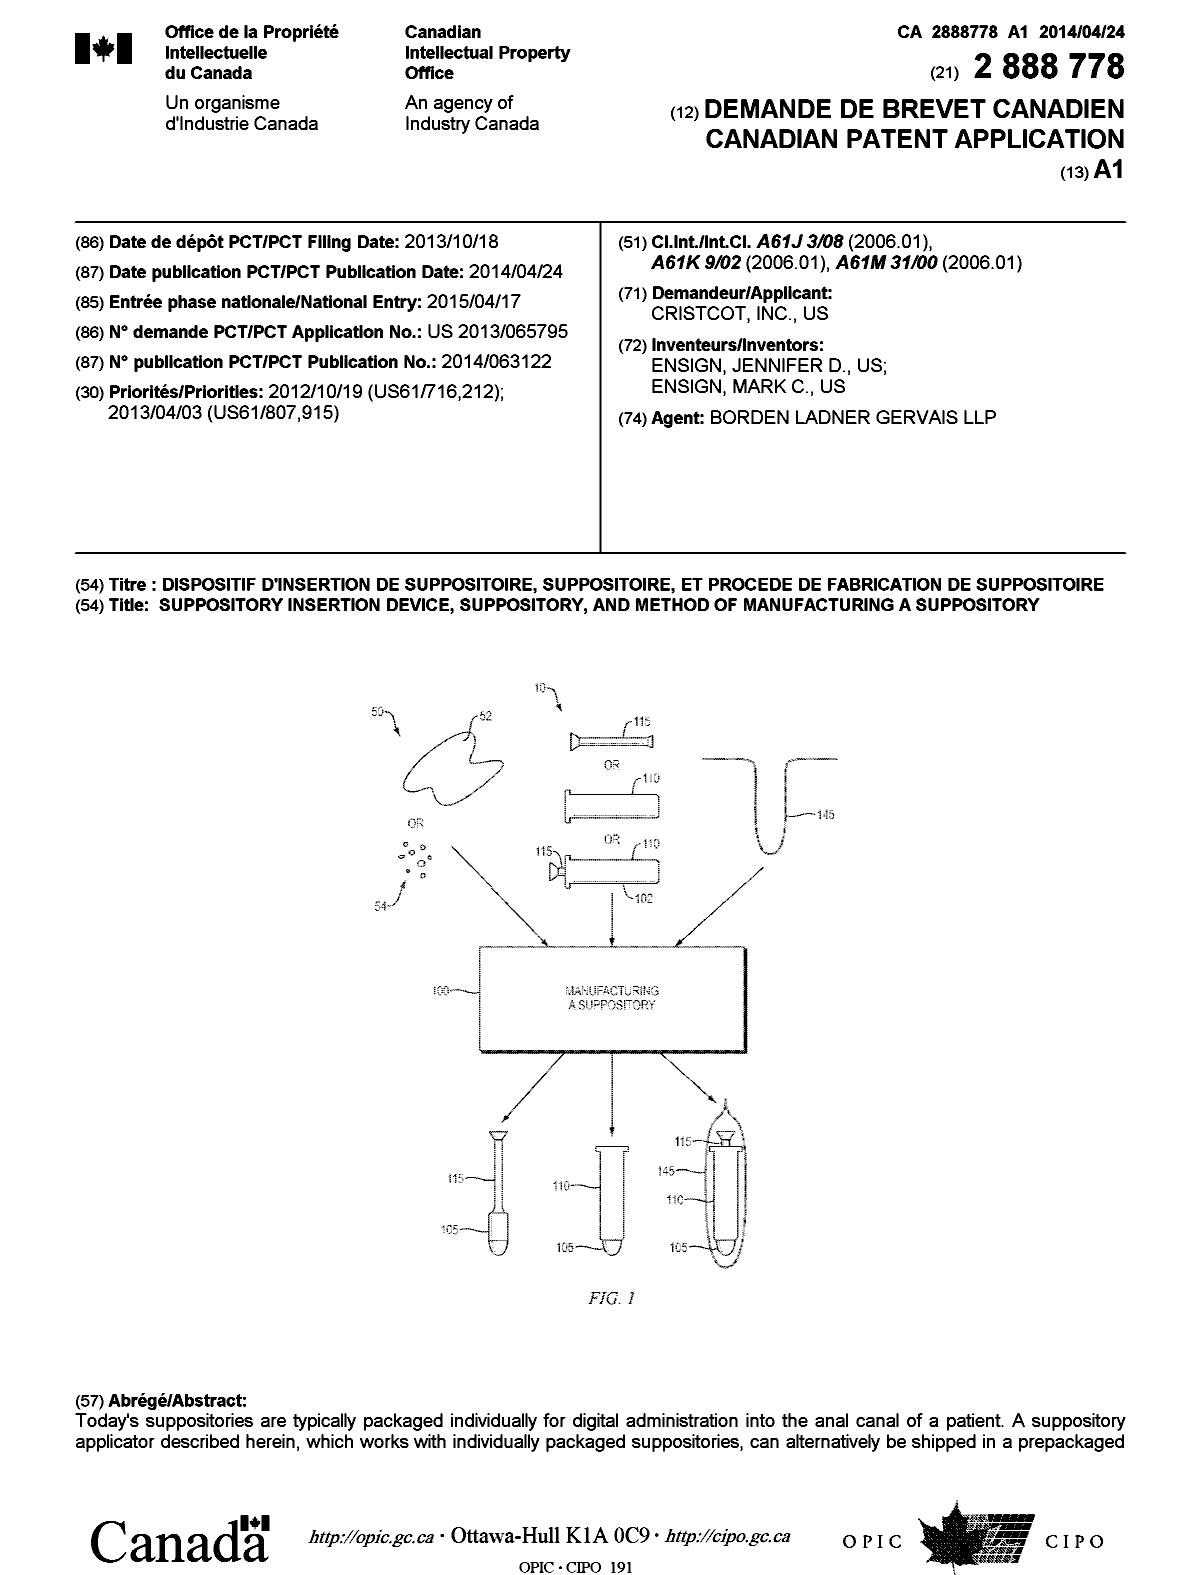 Document de brevet canadien 2888778. Page couverture 20141215. Image 1 de 2